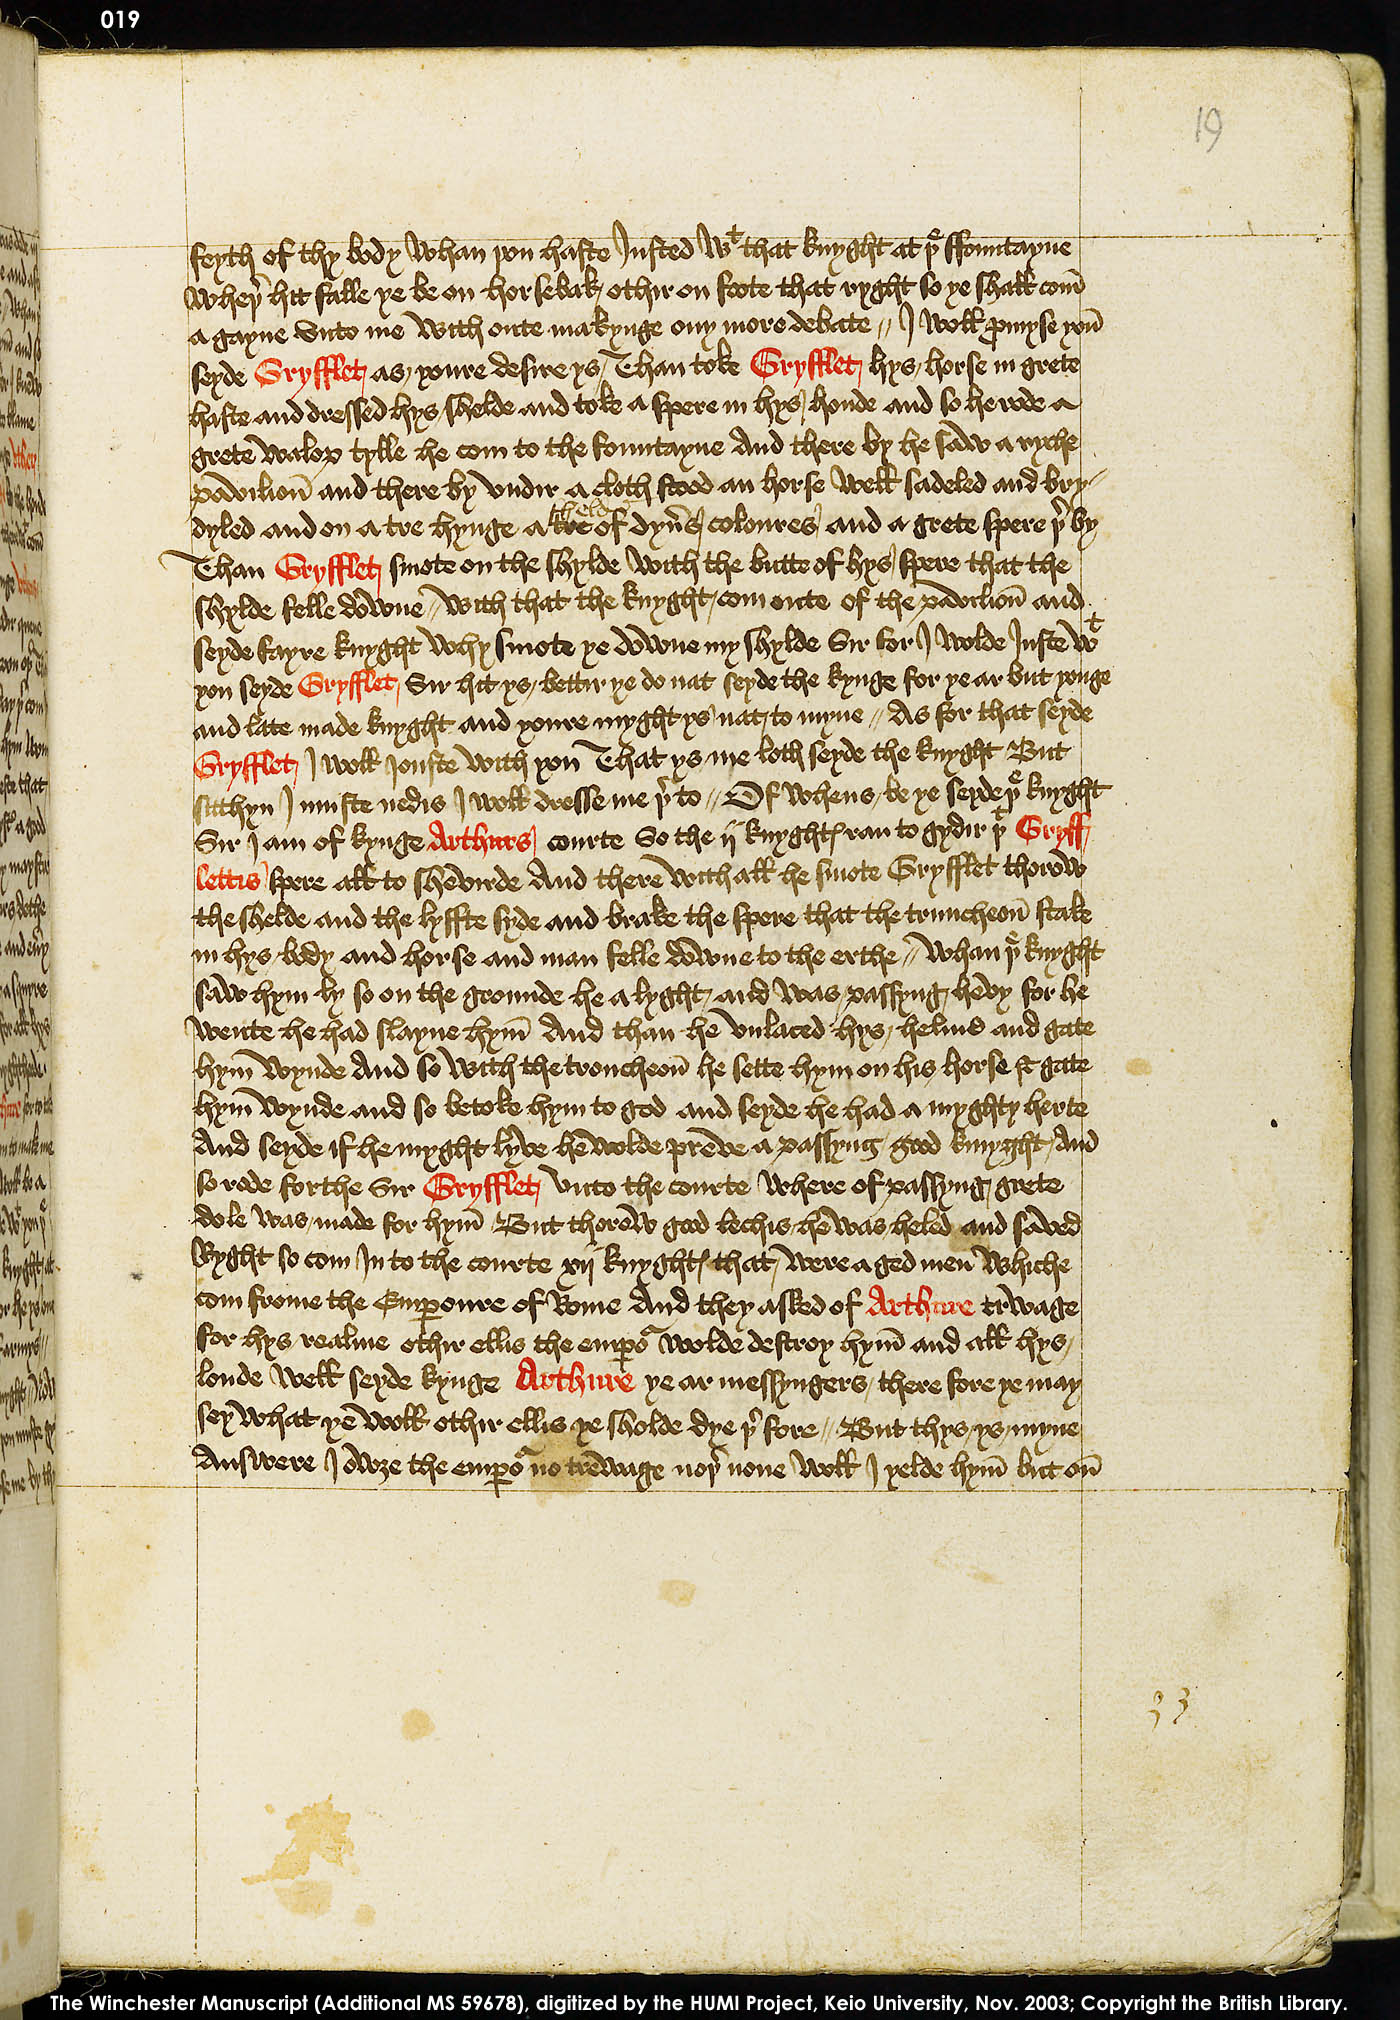 Folio 19r